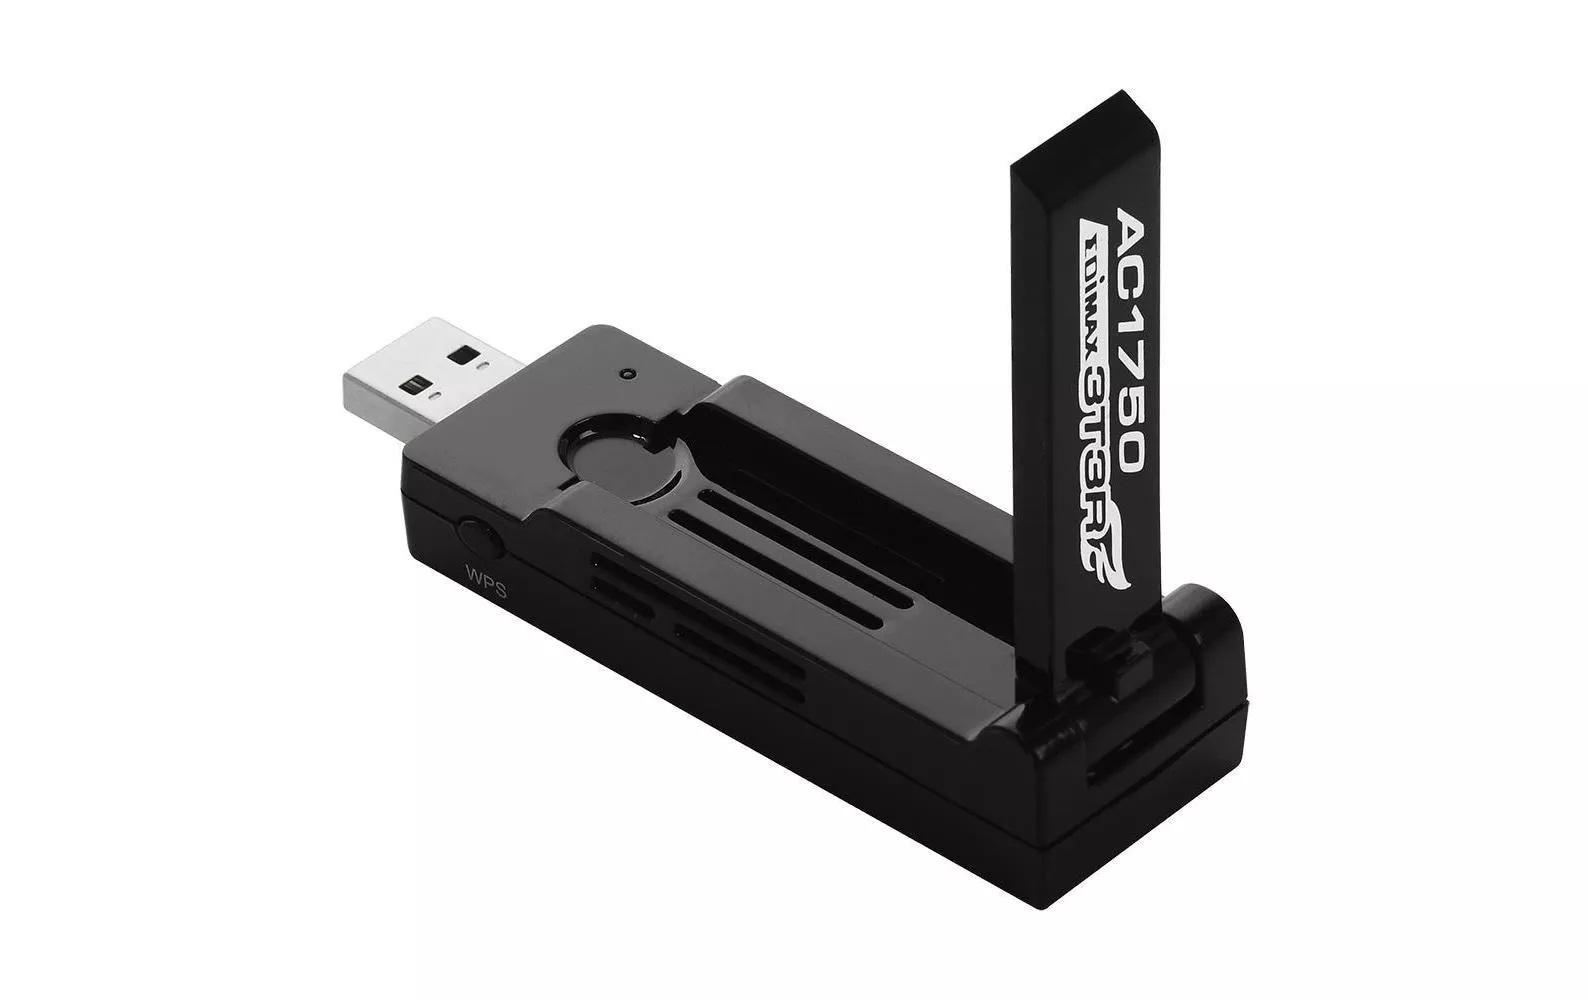 WLAN-AC USB-Stick EW-7833UAC